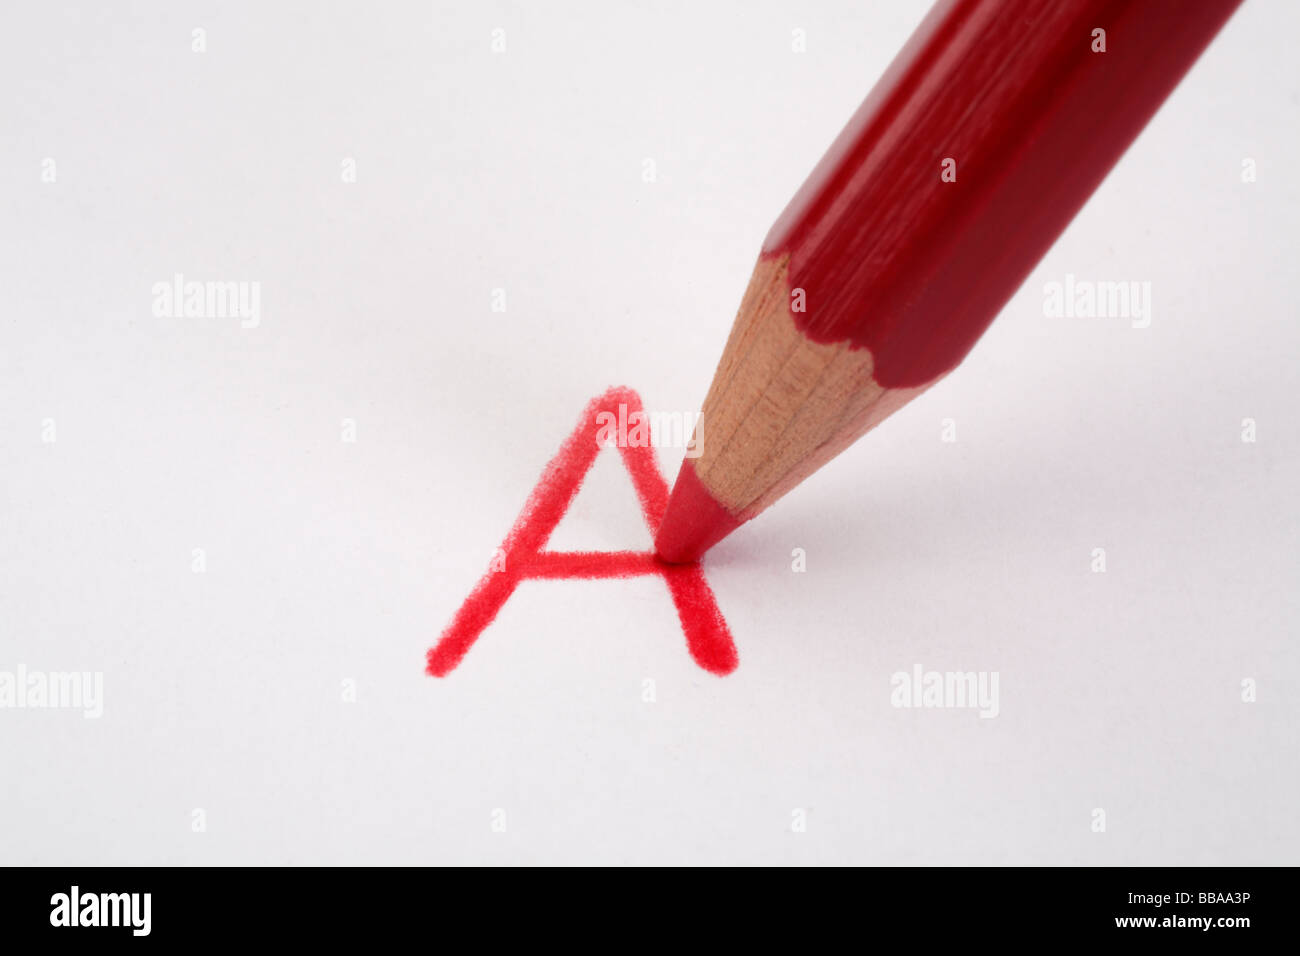 Le marquage d'un crayon rouge sur papier un close up Banque D'Images